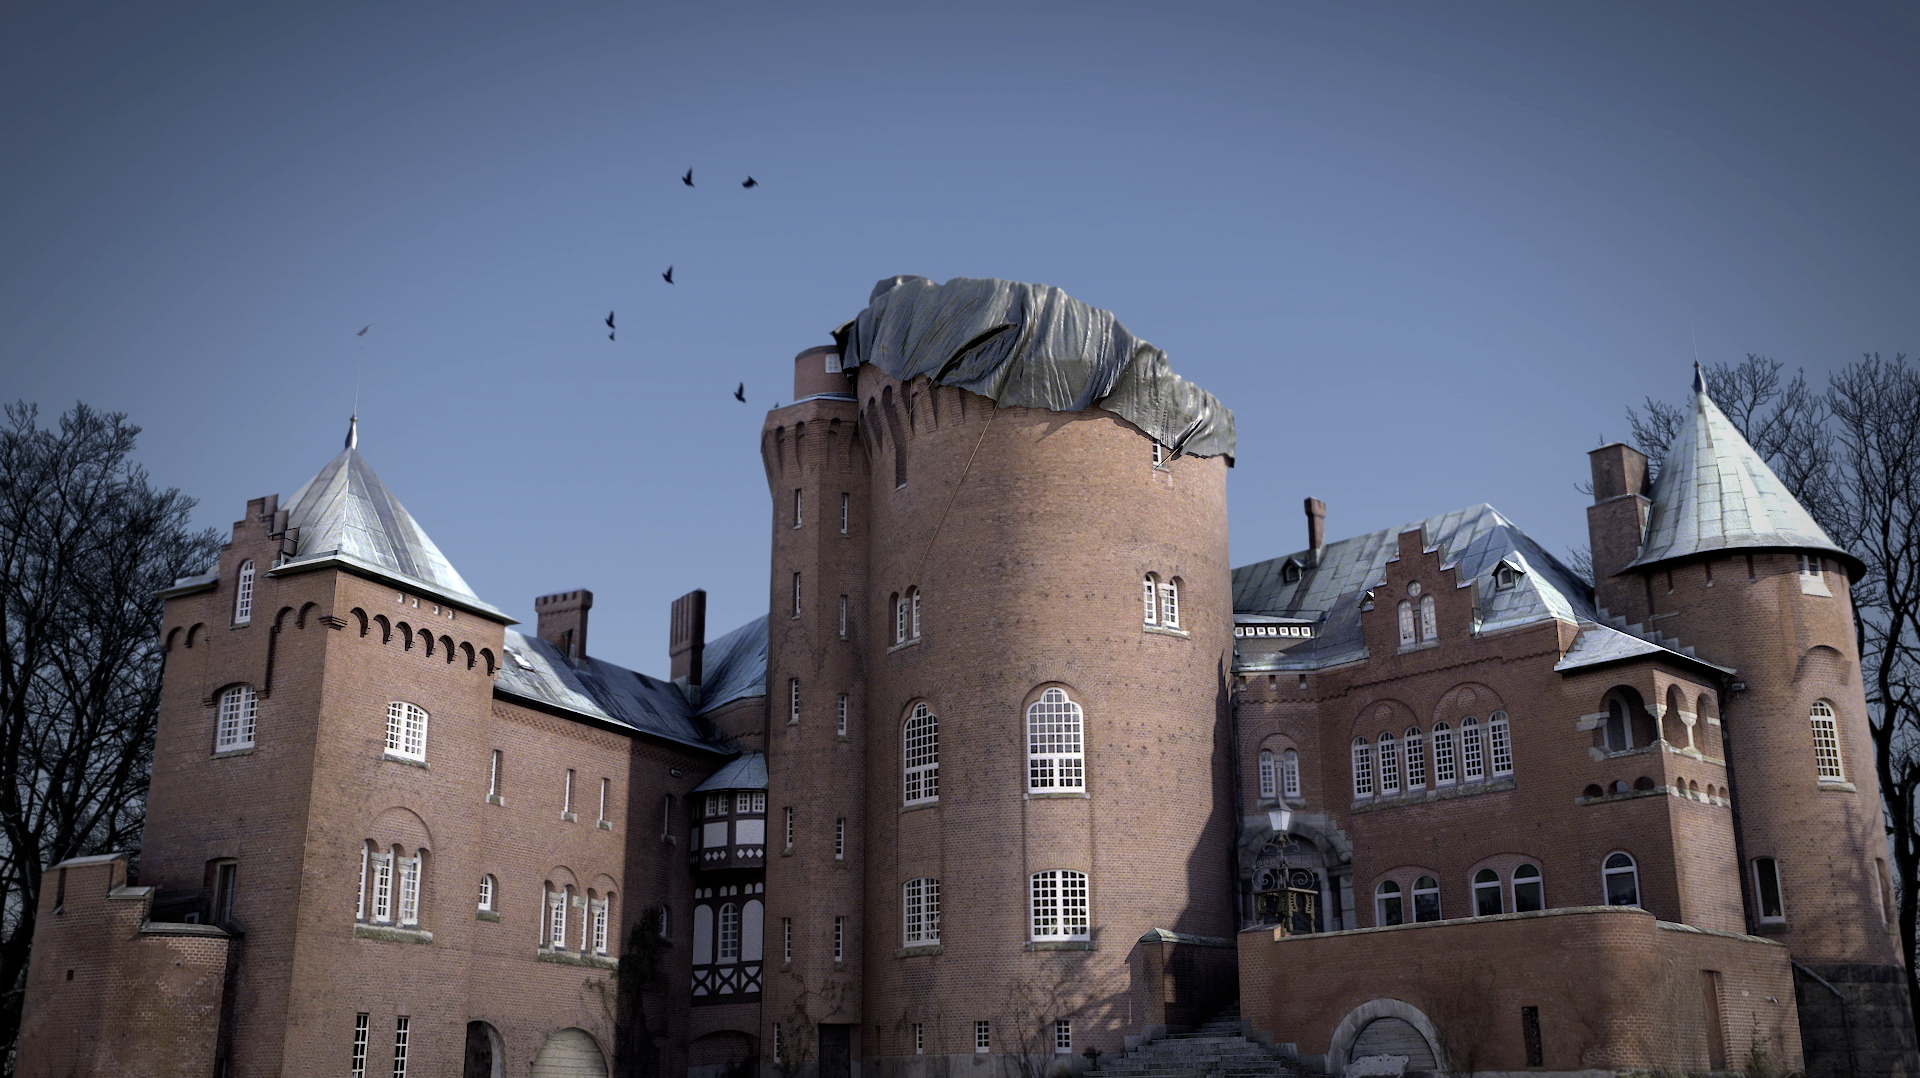 JK 2012 – The Castle